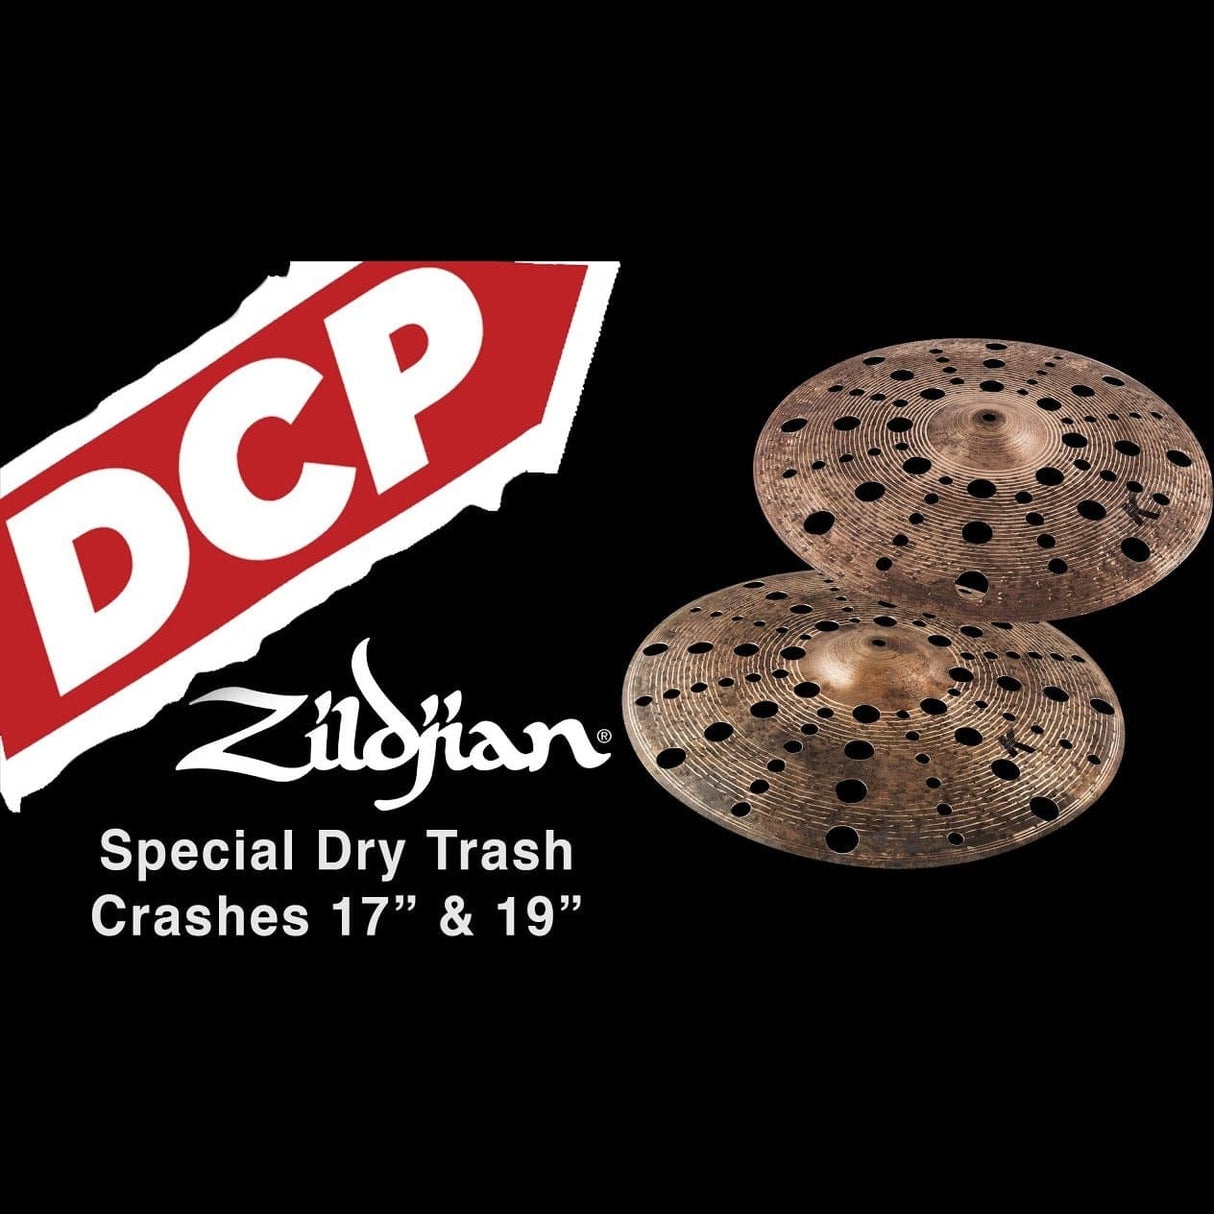 Zildjian K Custom Special Dry Trash Crash Cymbal 17"